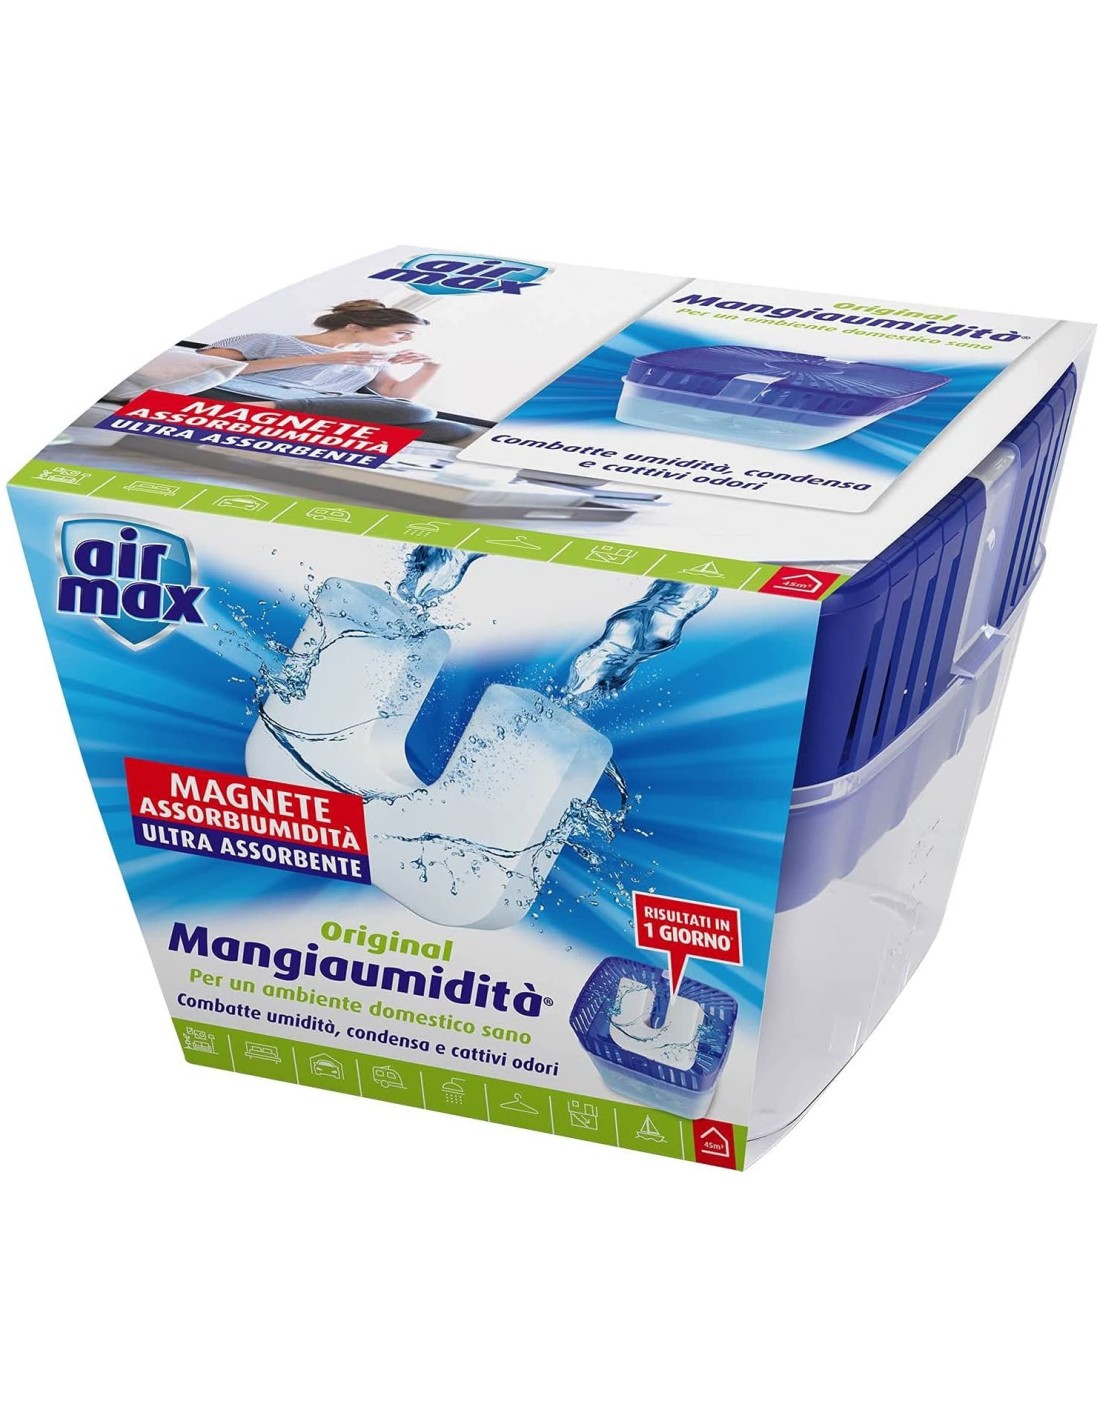 Tab Magnete assorbi umidità 2 x 100g Air Max ® Mangiaumidità